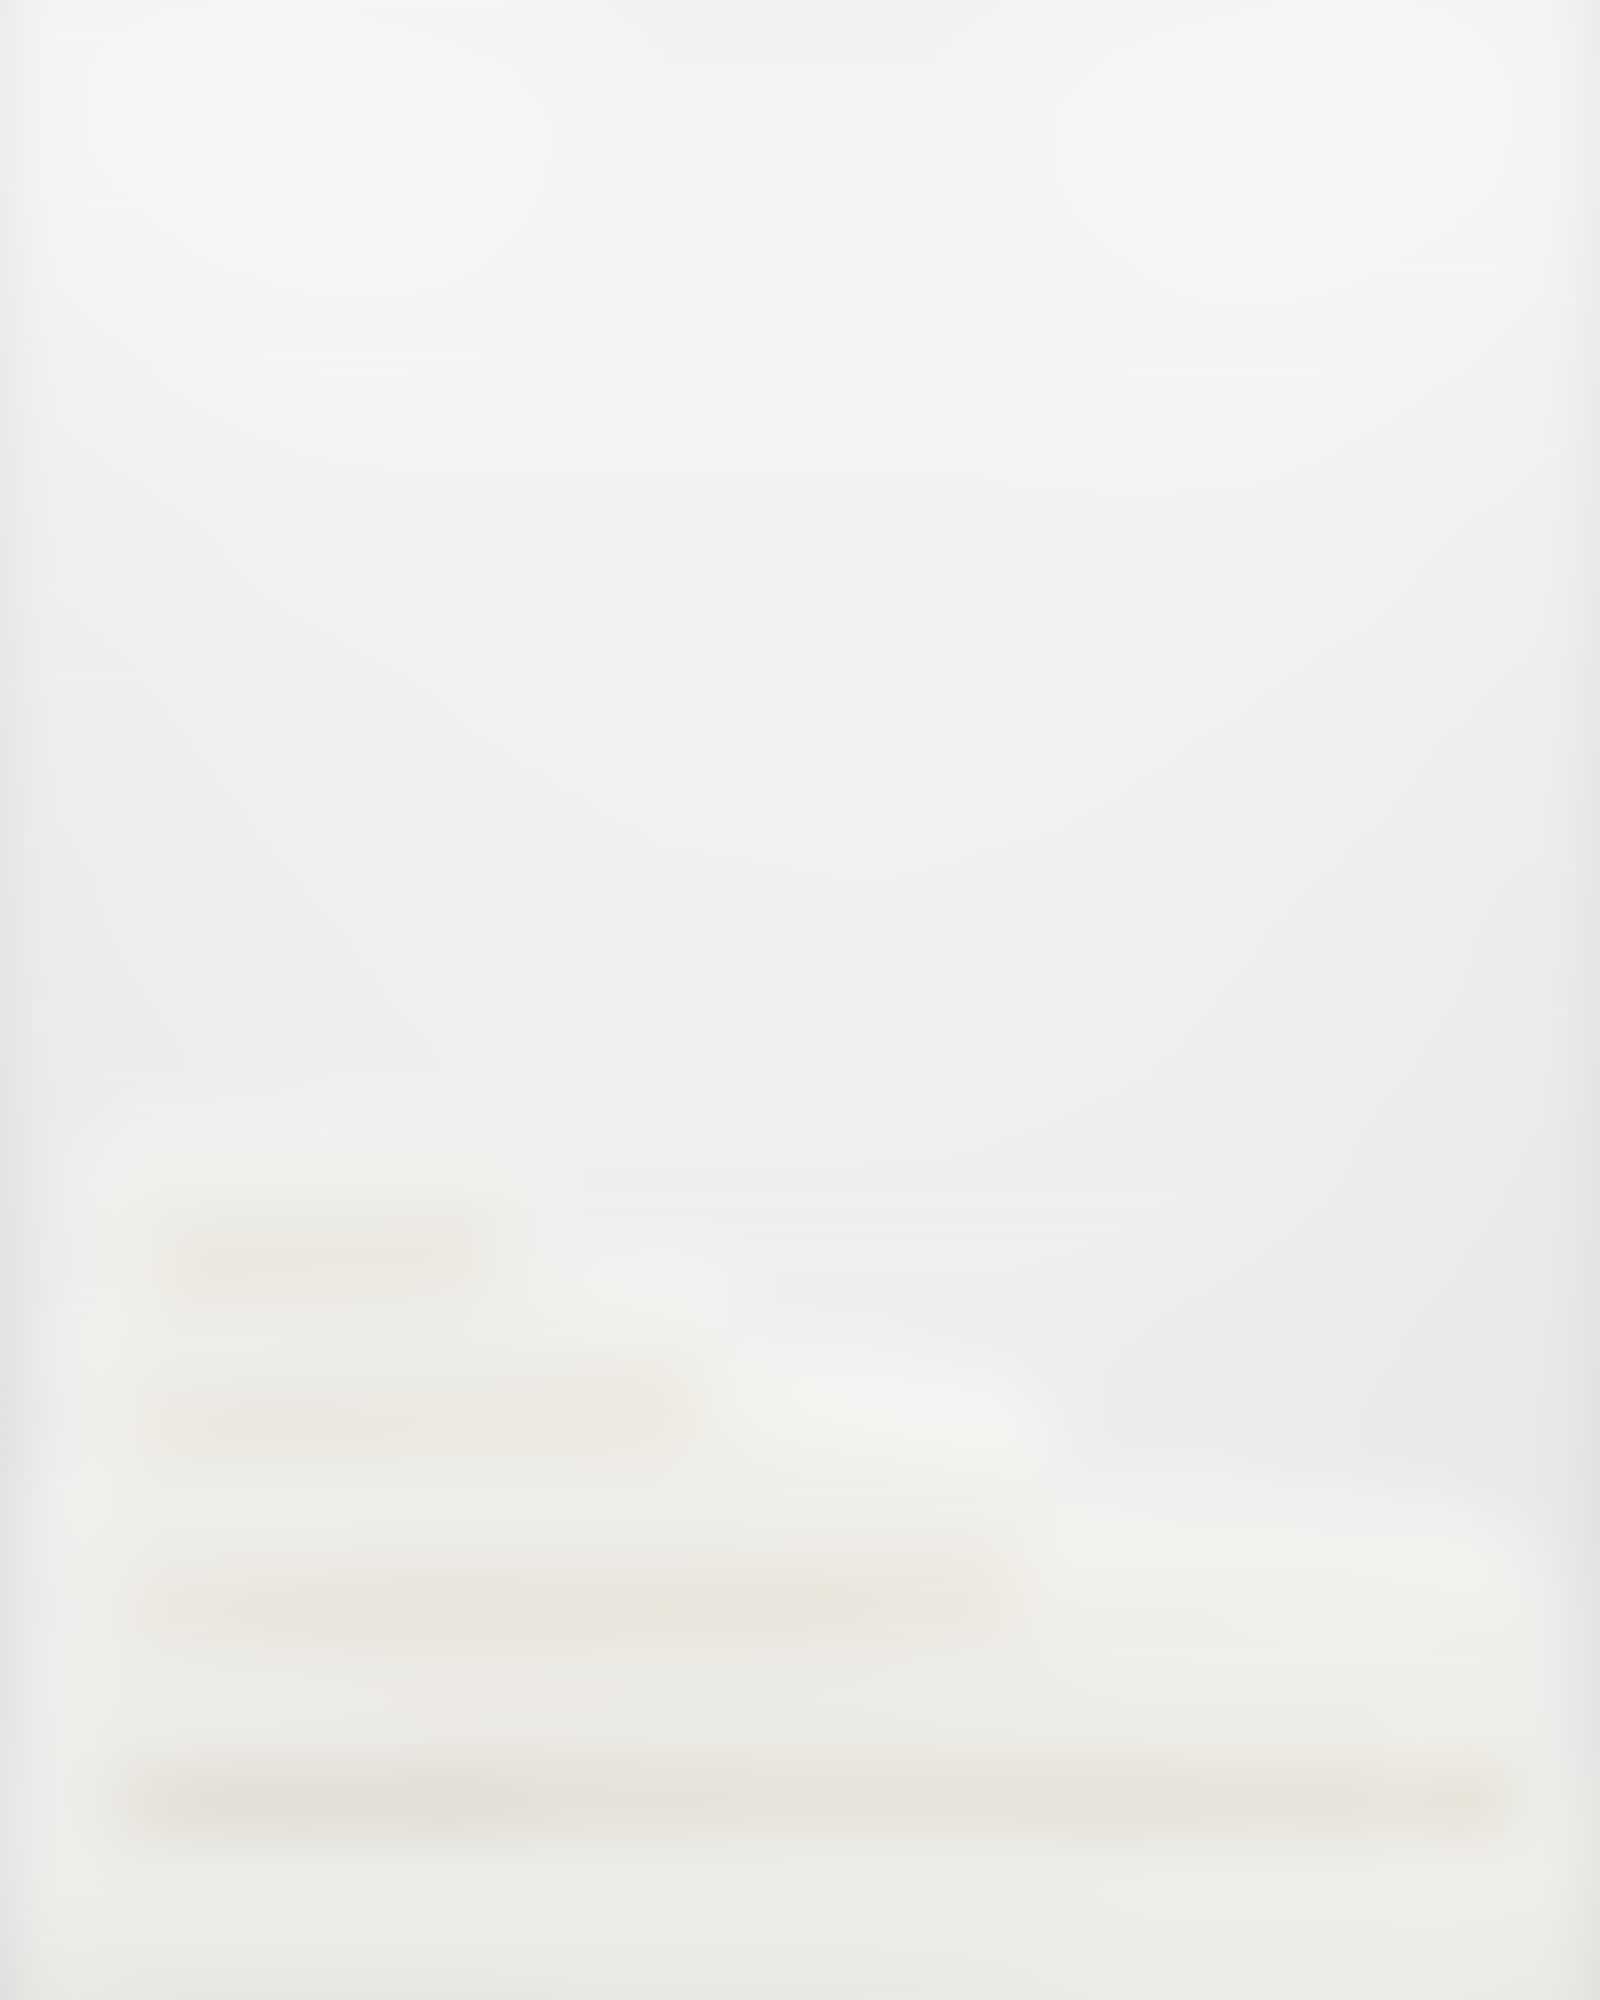 Möve - Superwuschel - Farbe: snow - 001 (0-1725/8775) - Handtuch 50x100 cm Detailbild 3